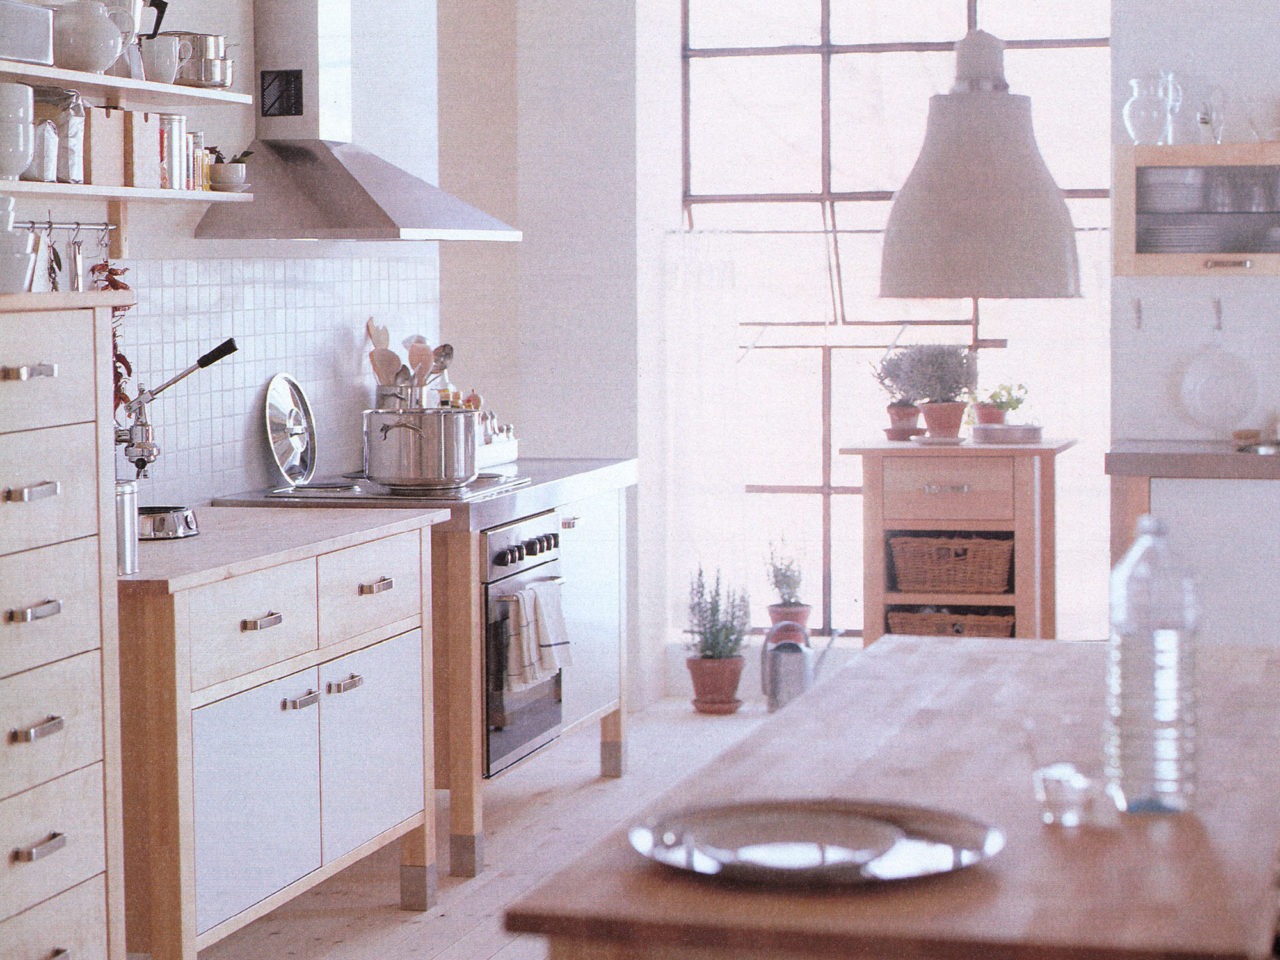 Küche aus hellem Holz mit Herd, Schränken und Kücheninseln als freistehende Module. Weiß geflieste Wand, Edelstahl-Details.